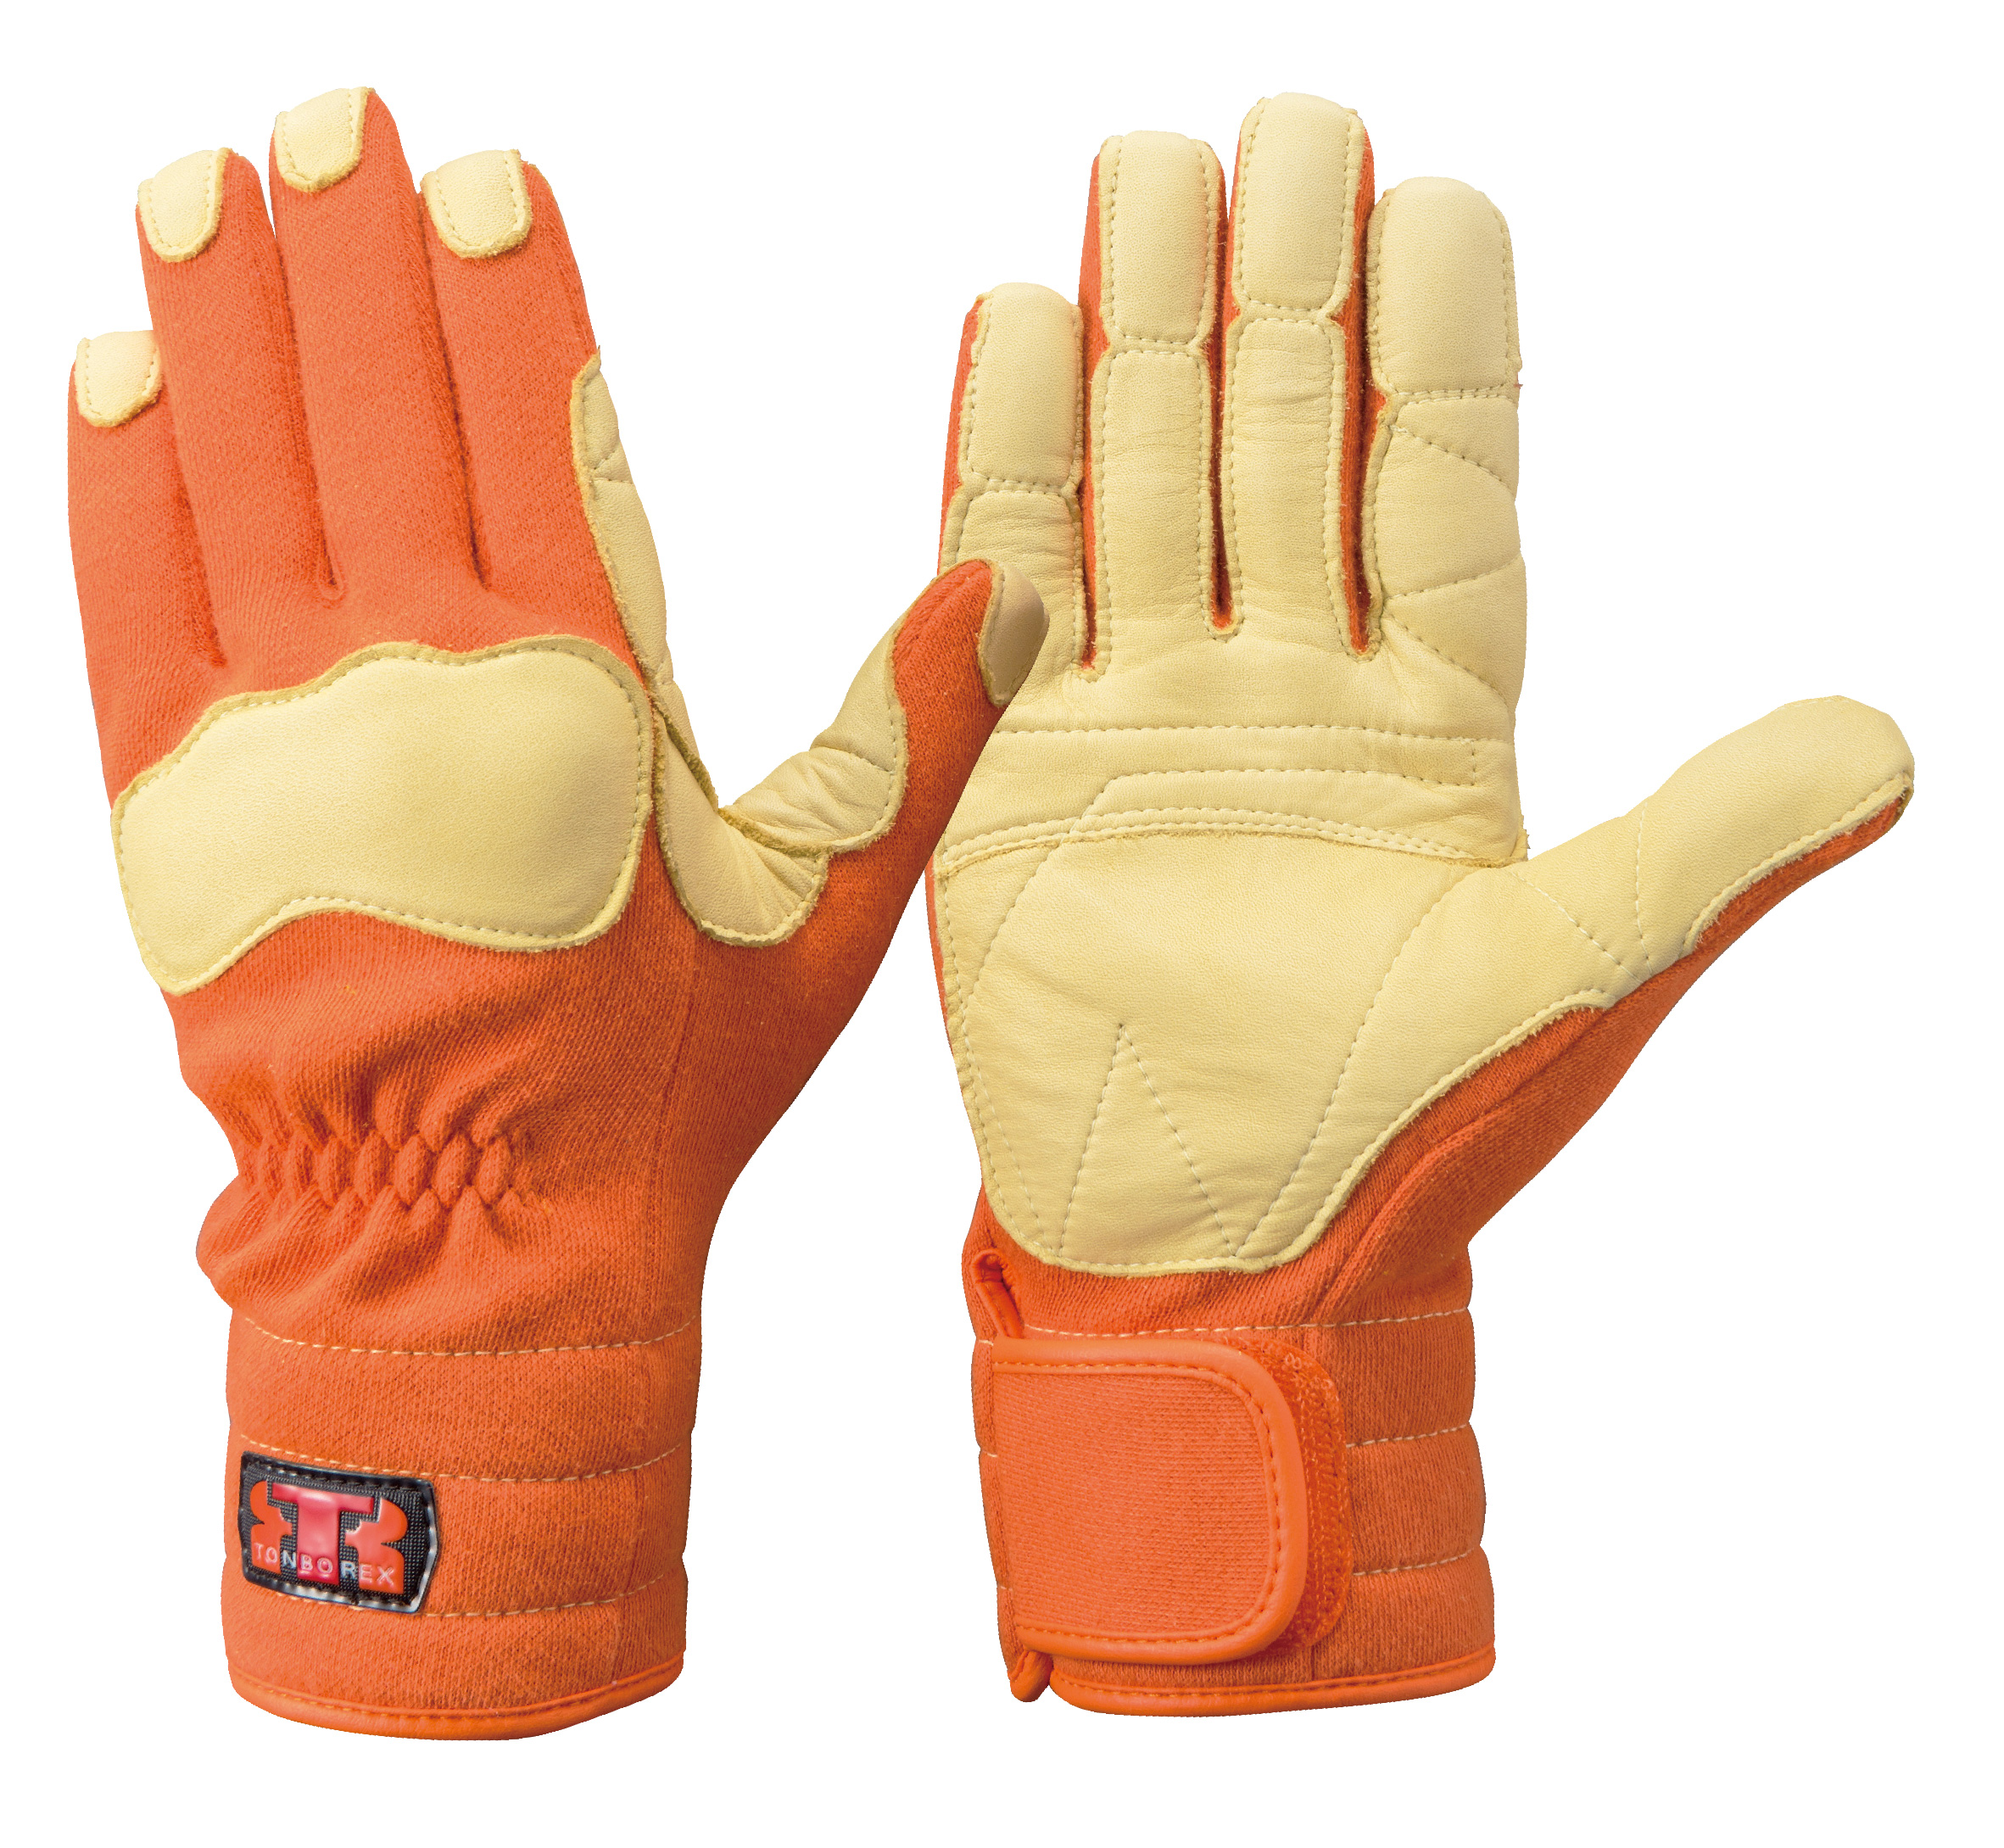 ケブラー®繊維製手袋(耐切創）シリーズ 一覧 | 官公庁向けグローブ専門 